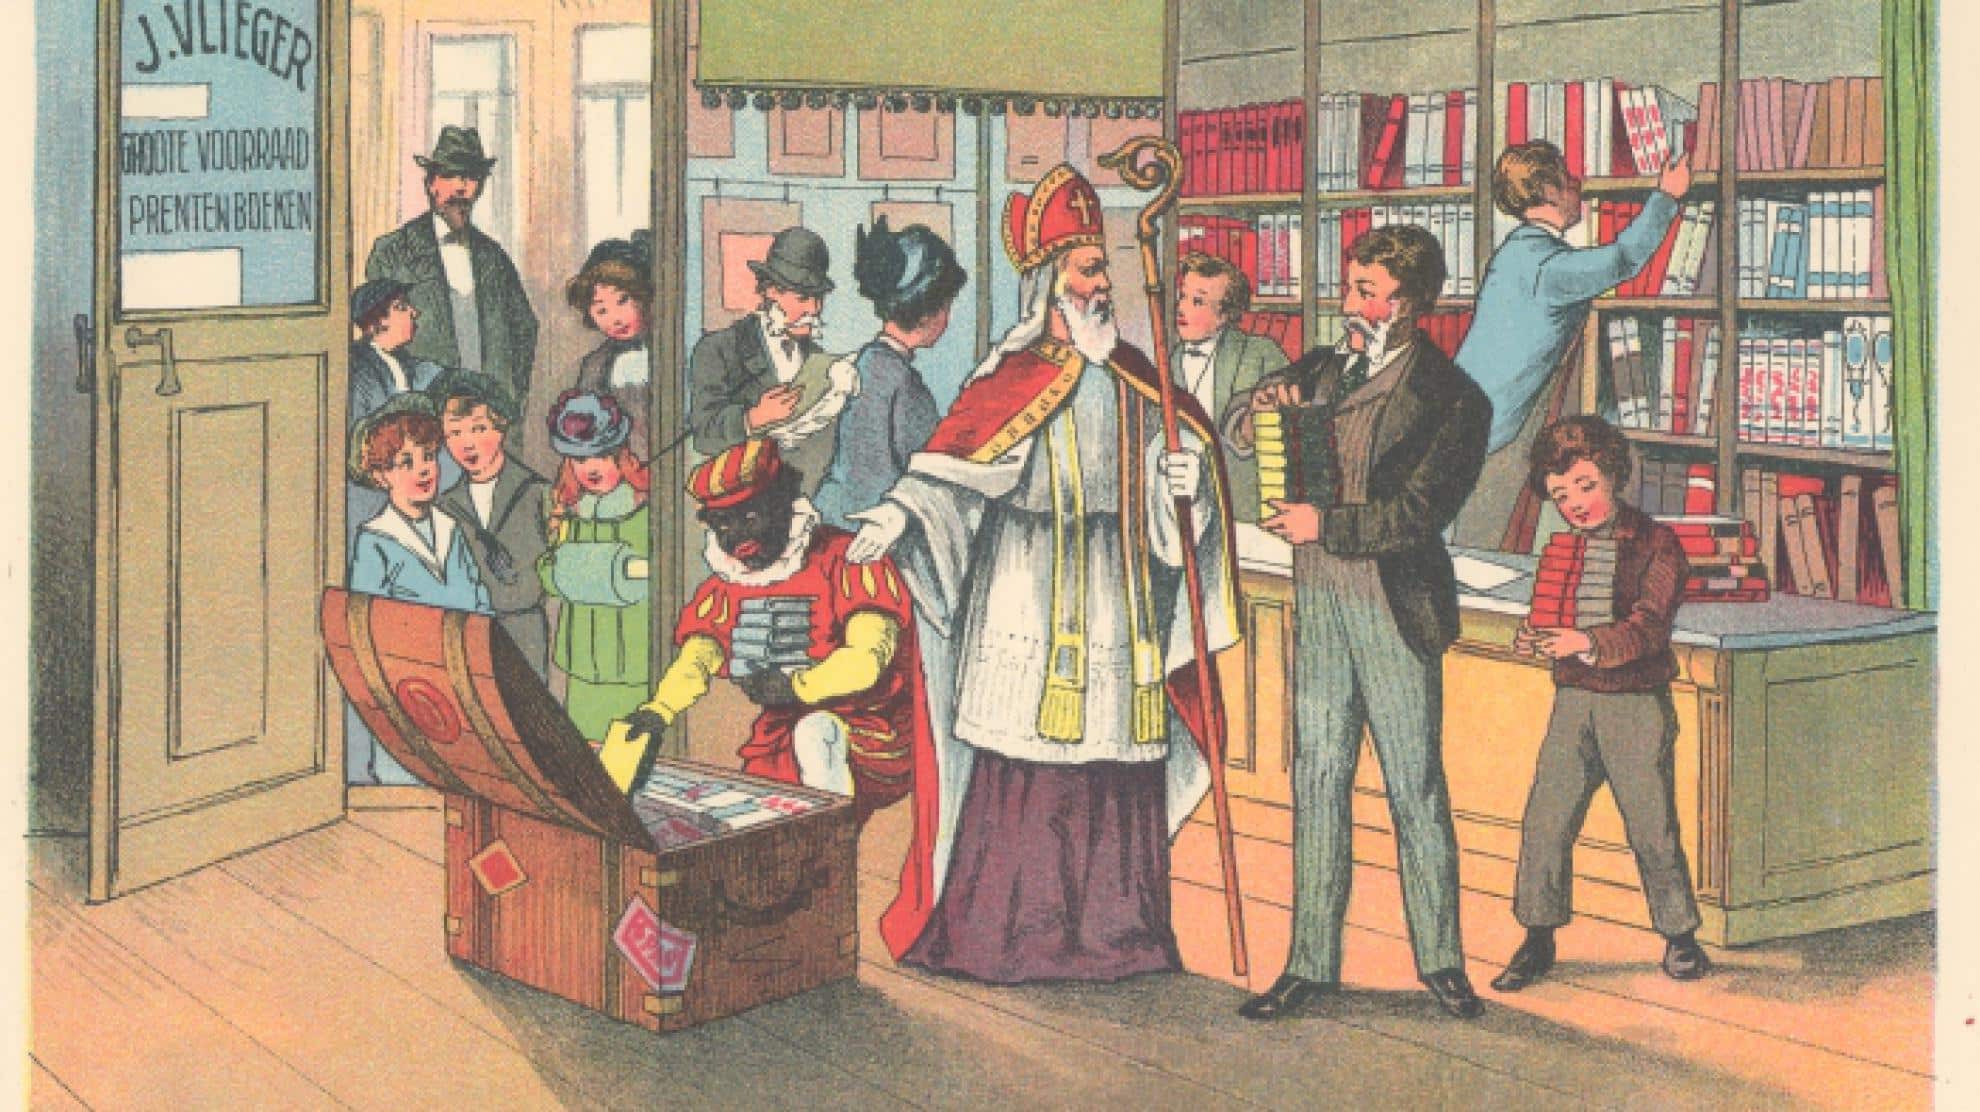 Bildquelle: npo, Sinterklaas und Zwarte Piet in einem Bilderbuch von Jan Schenkman, 1850